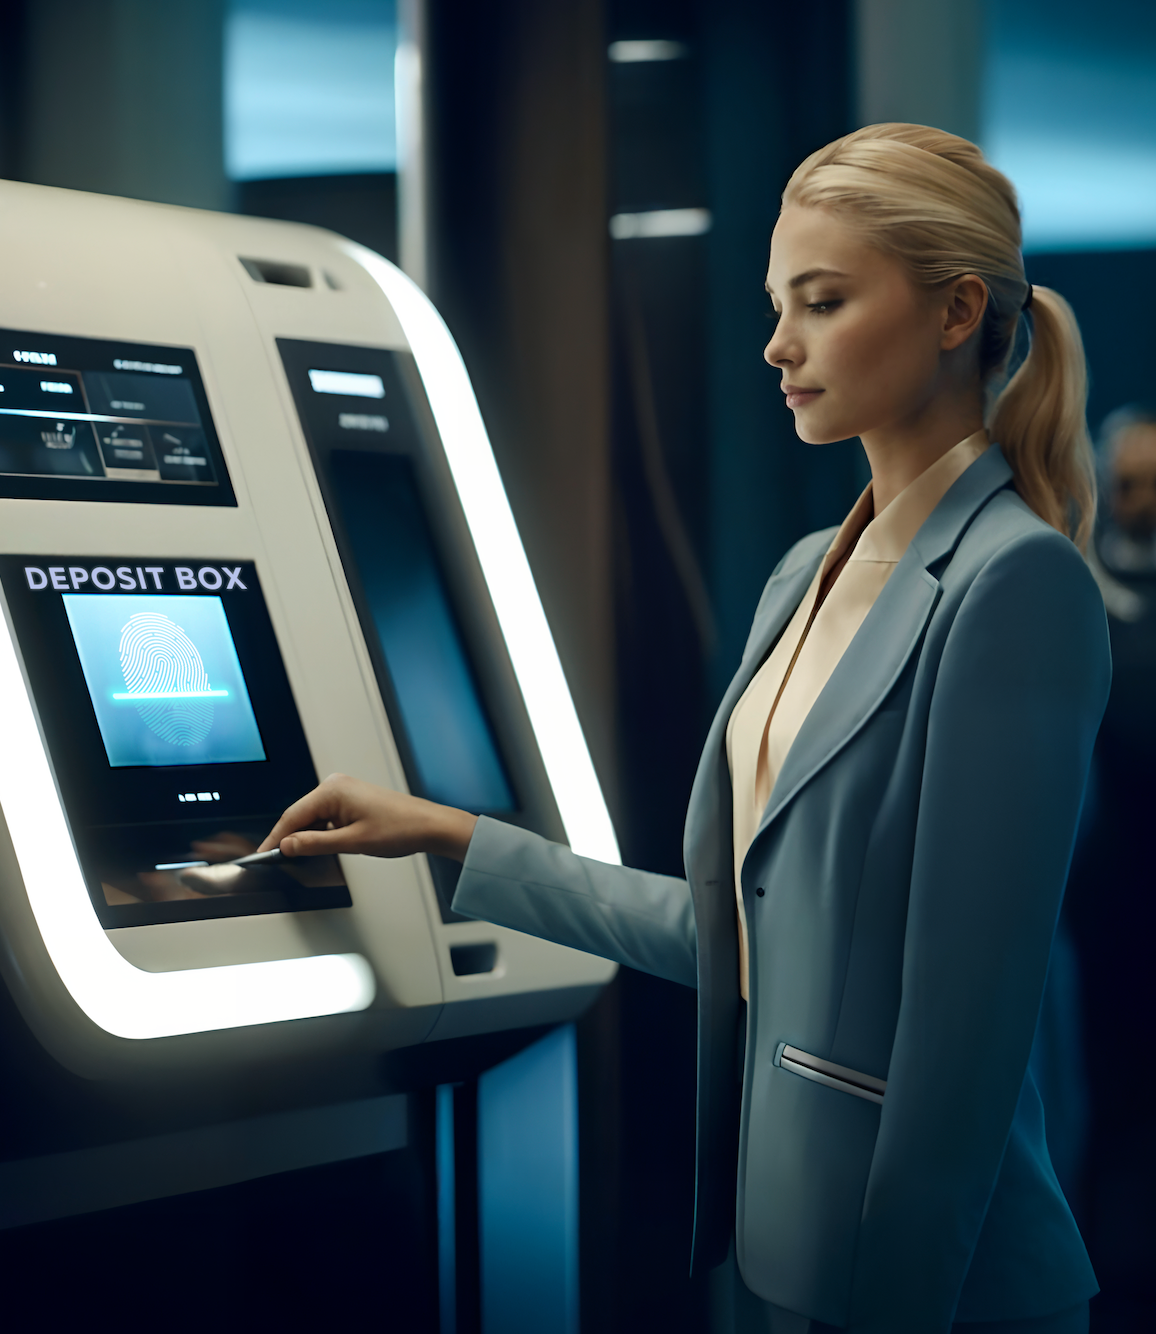 Nver Introduces Unique Service - Private Deposit Boxes